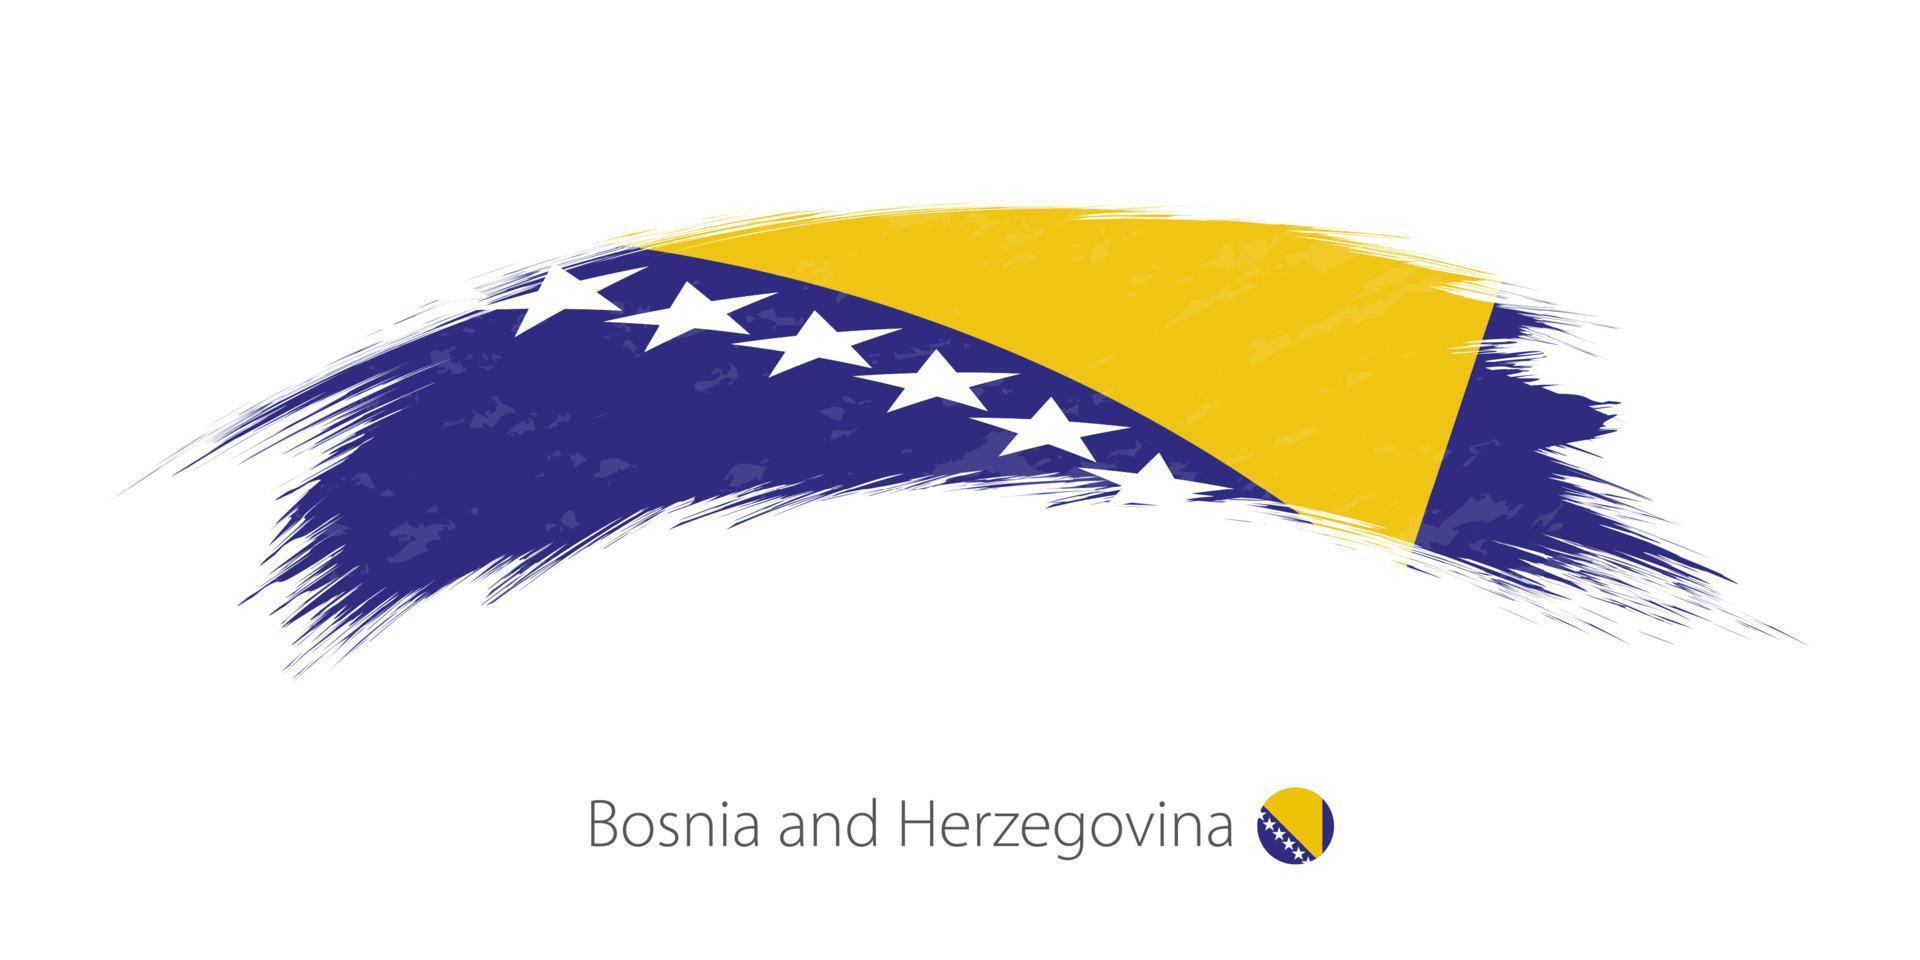 bandiera della bosnia e dell'erzegovina in una pennellata grunge arrotondata. vettore